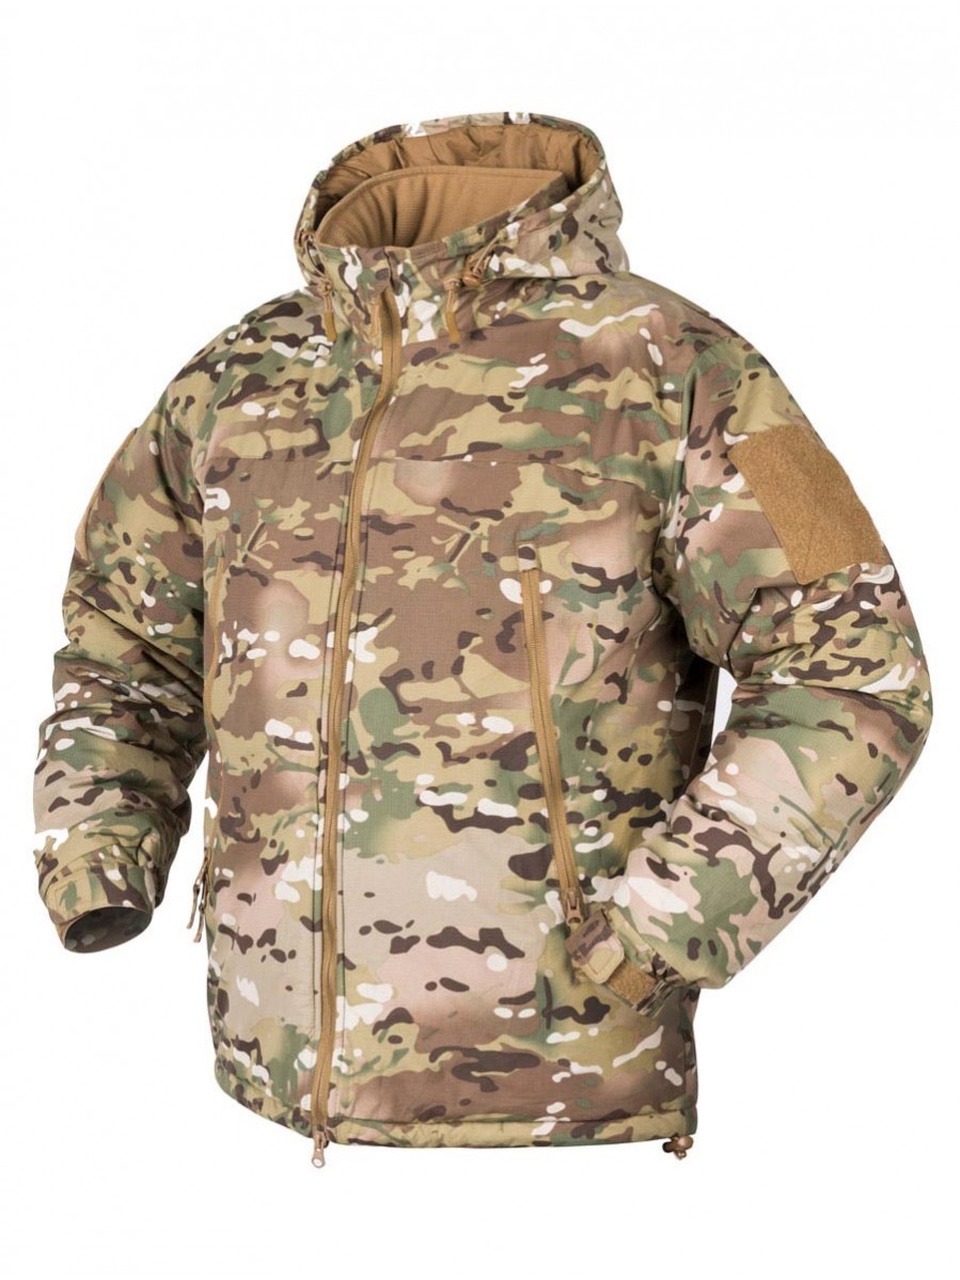 Тактическая куртка LEVEL 7 - 11 500 ₽, заказать онлайн.